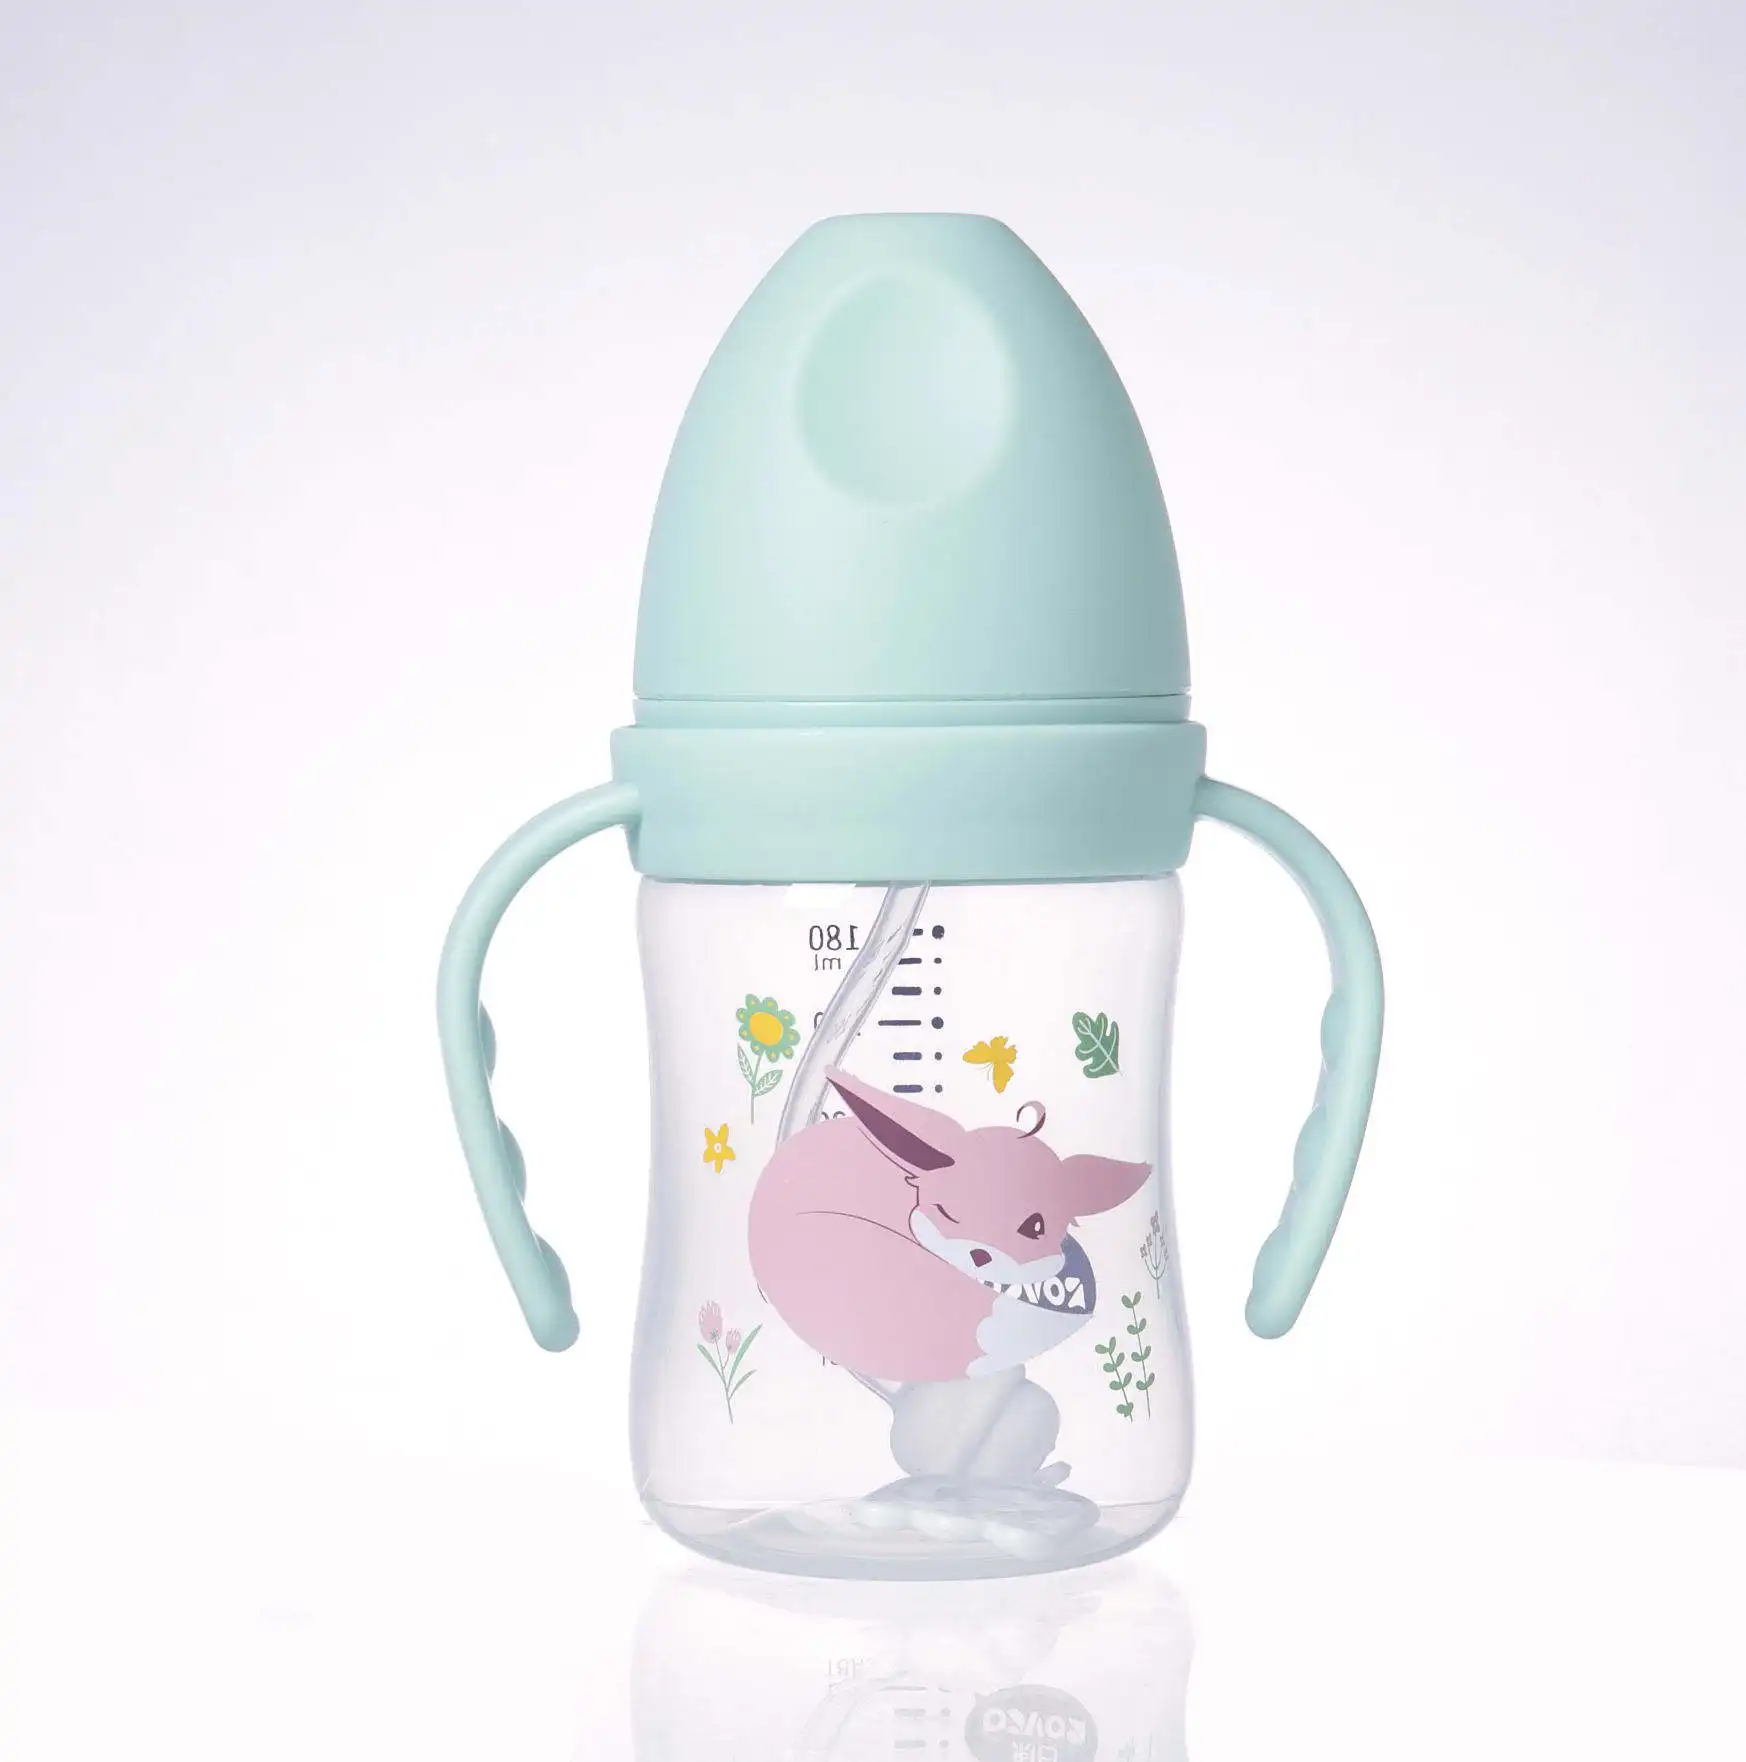 Garrafas de armazenamento de leite materno, mamadeiras de silicone flexíveis para alimentação de bebês, RK-3129